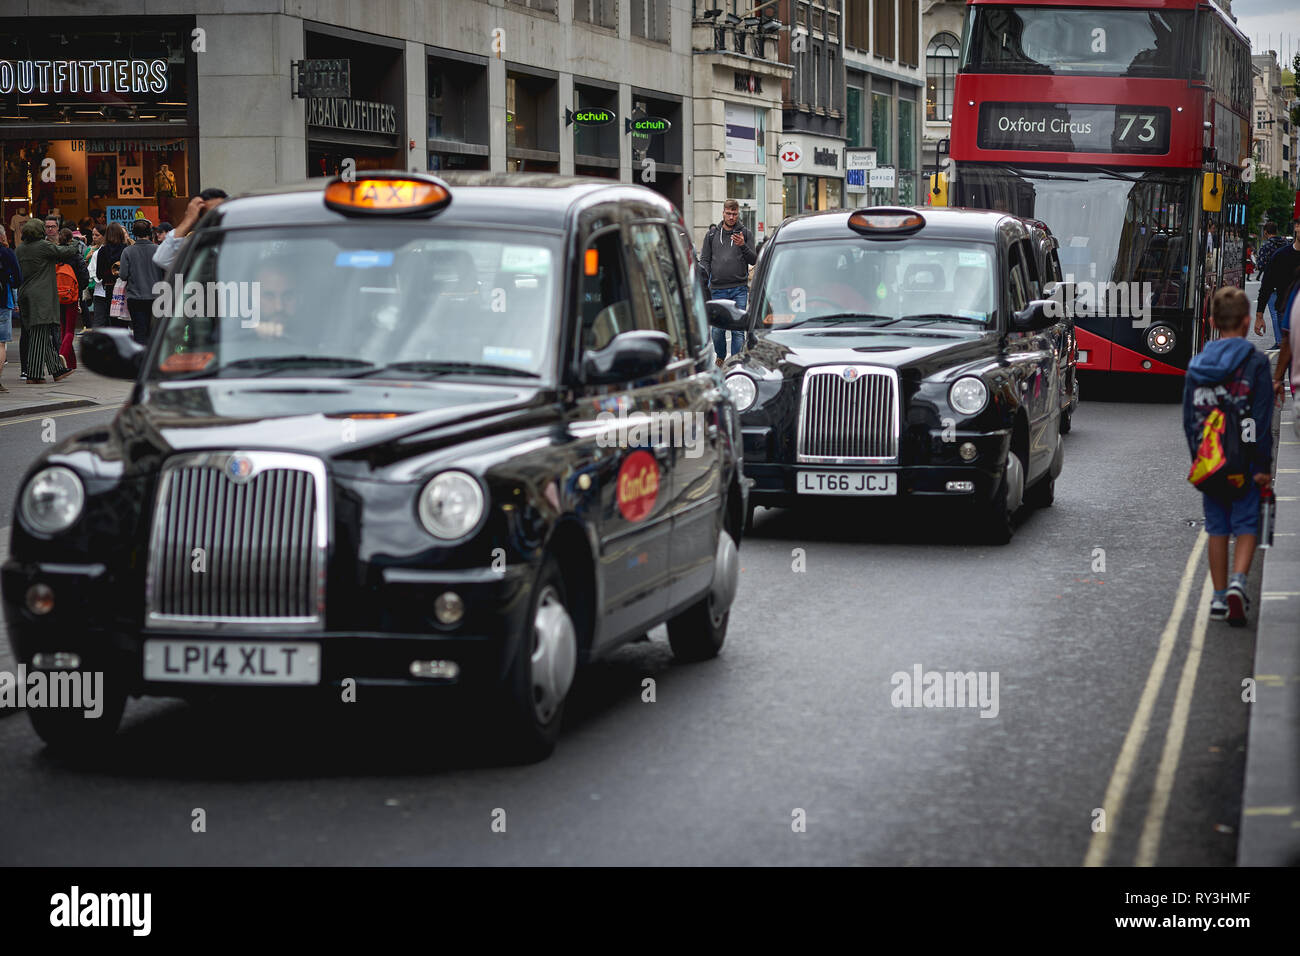 Londres, UK - août 2018. Les taxis noirs et rouges iconiques bus dans le centre de Londres. Banque D'Images